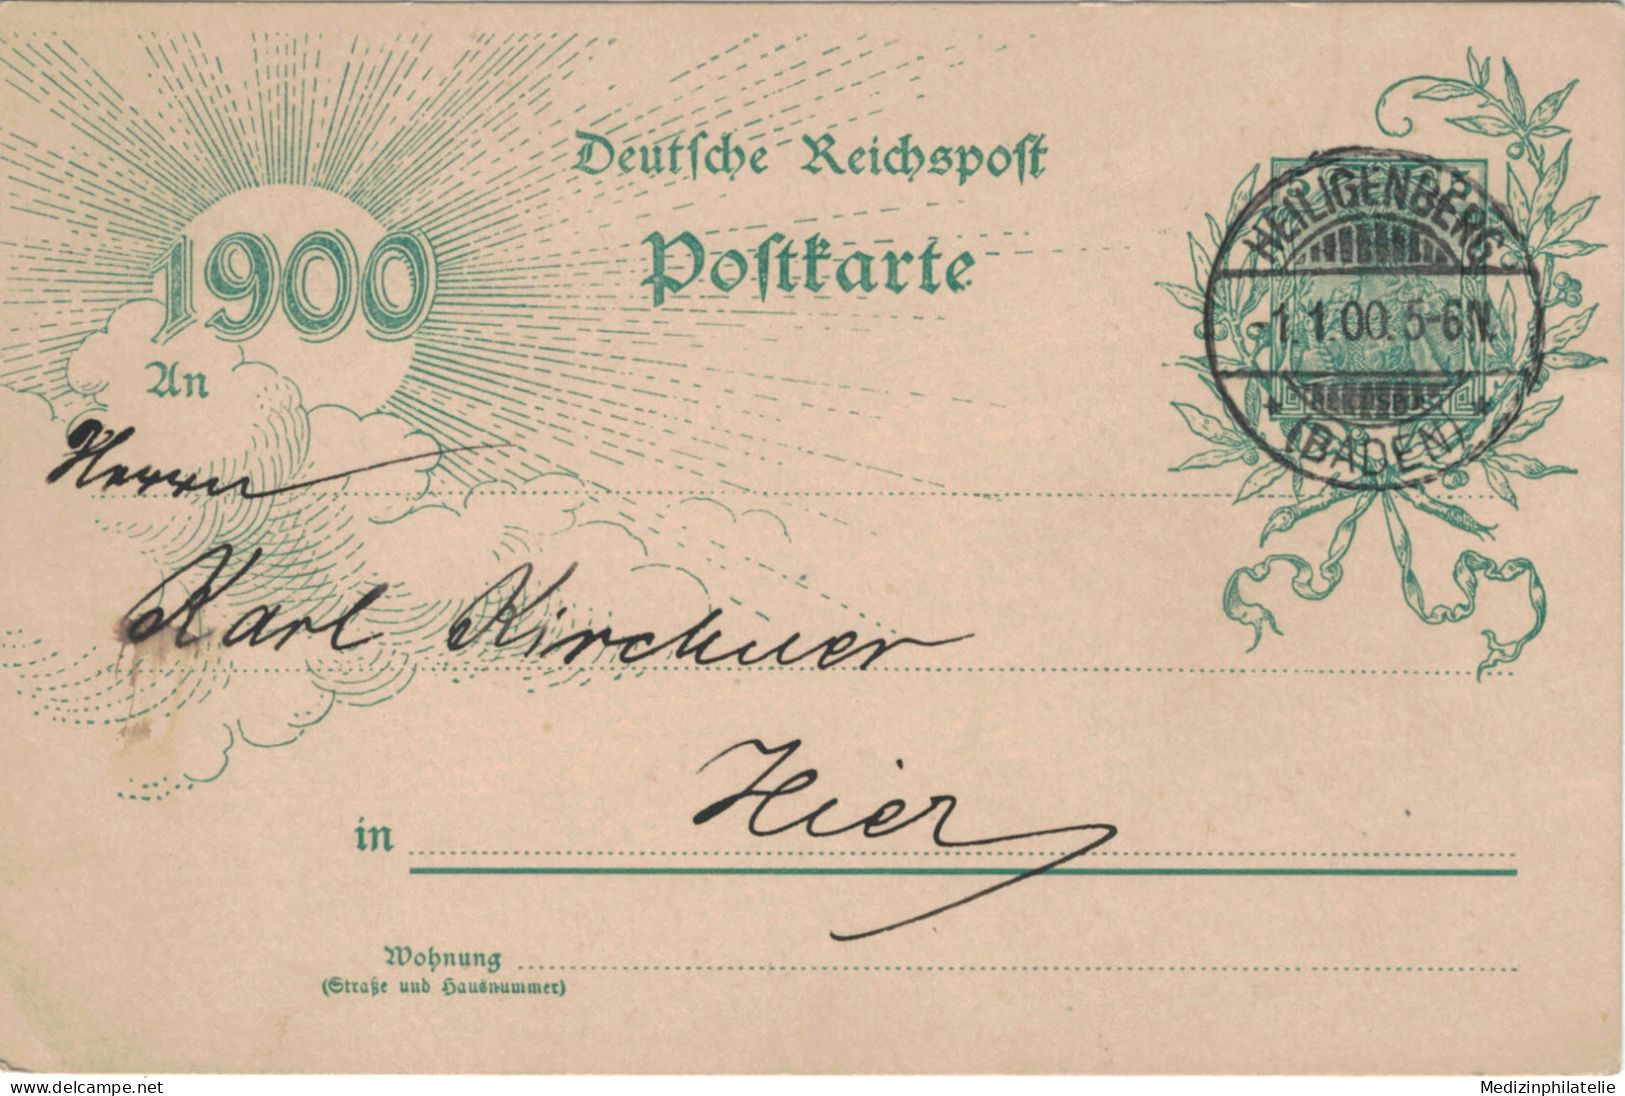 Ganzsache 5 Pfennig Jubiläumskarte 1900 - Ortskarte Heiligenberg 1.1.1900 - Briefkaarten